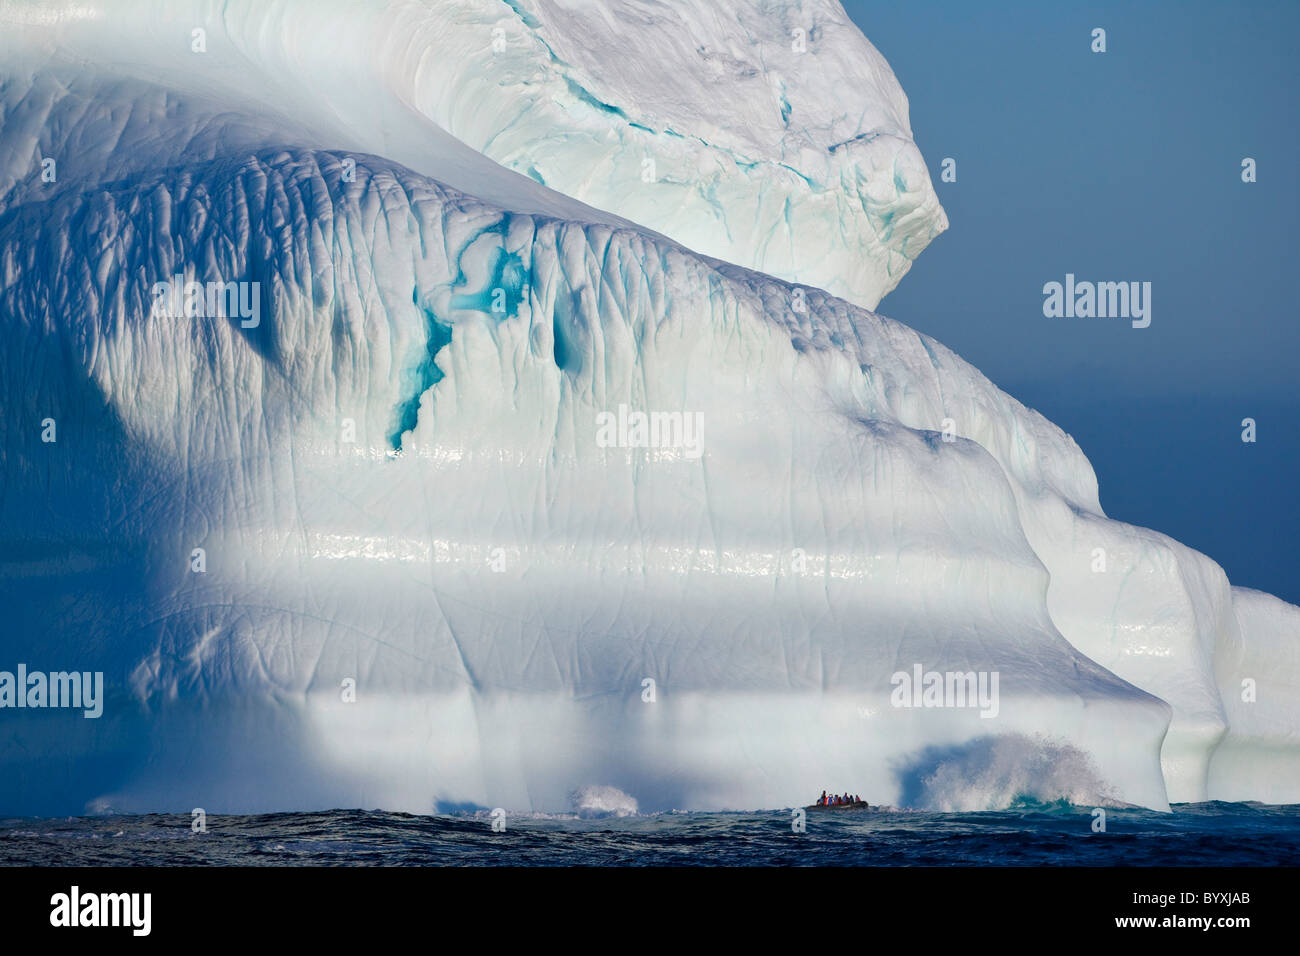 Une image composite de touristes explorant un iceberg dans leur voyage à travers l'Arctique canadien ; le Nunavut, Canada Banque D'Images